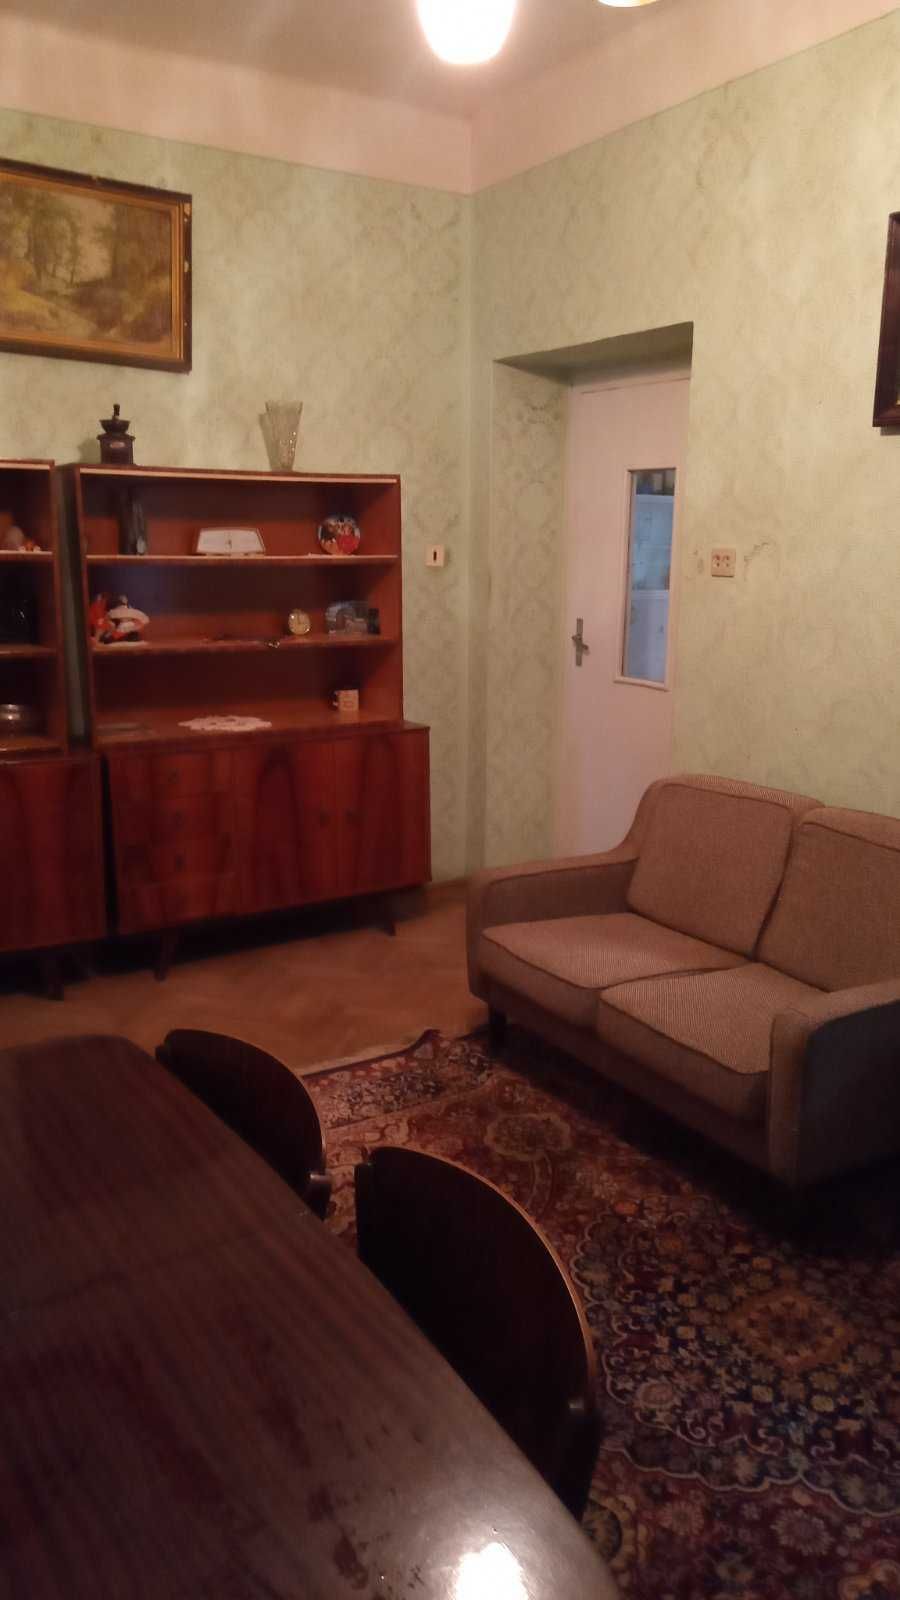 2-ох кімнатний напівособняк, квартира в безпечному м. Ужгород